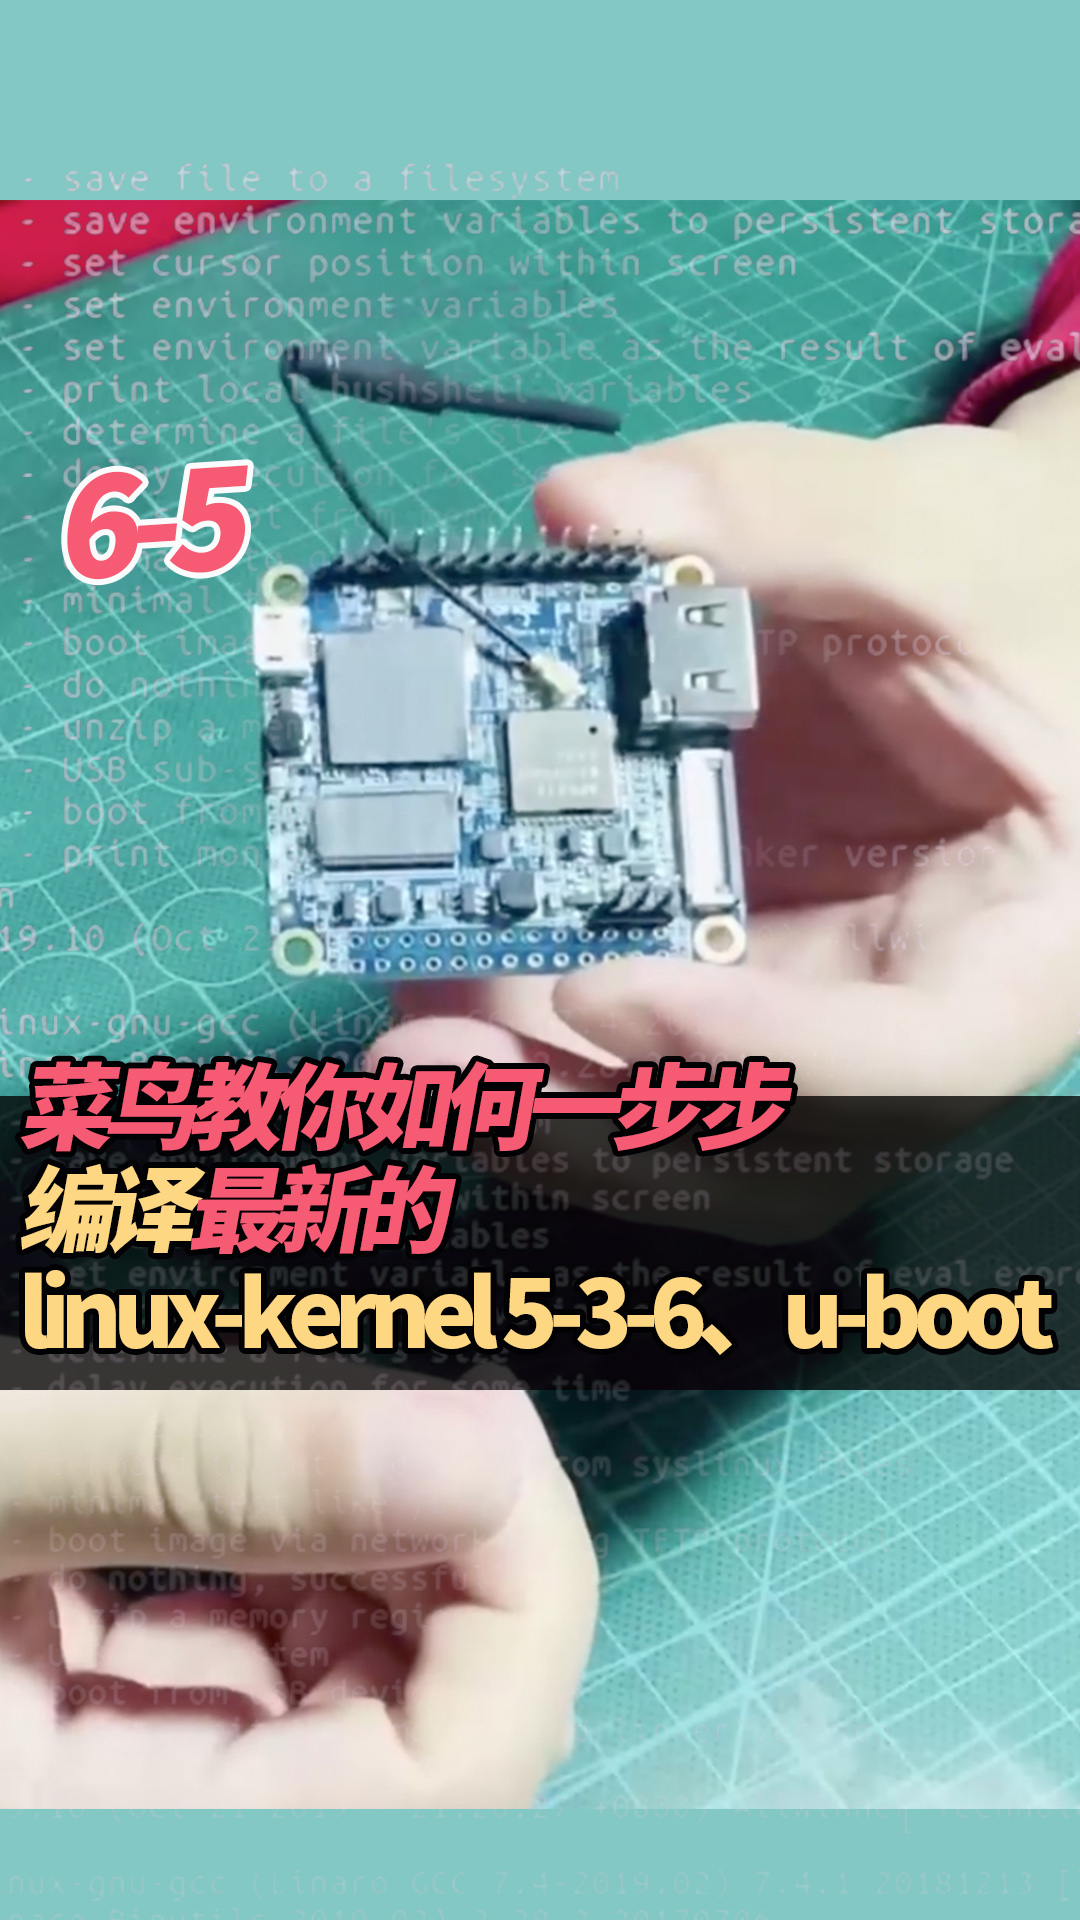 6-5菜鳥教你如何一步步編譯最新的linux-kernel 5-3-6、u-boot#linux 